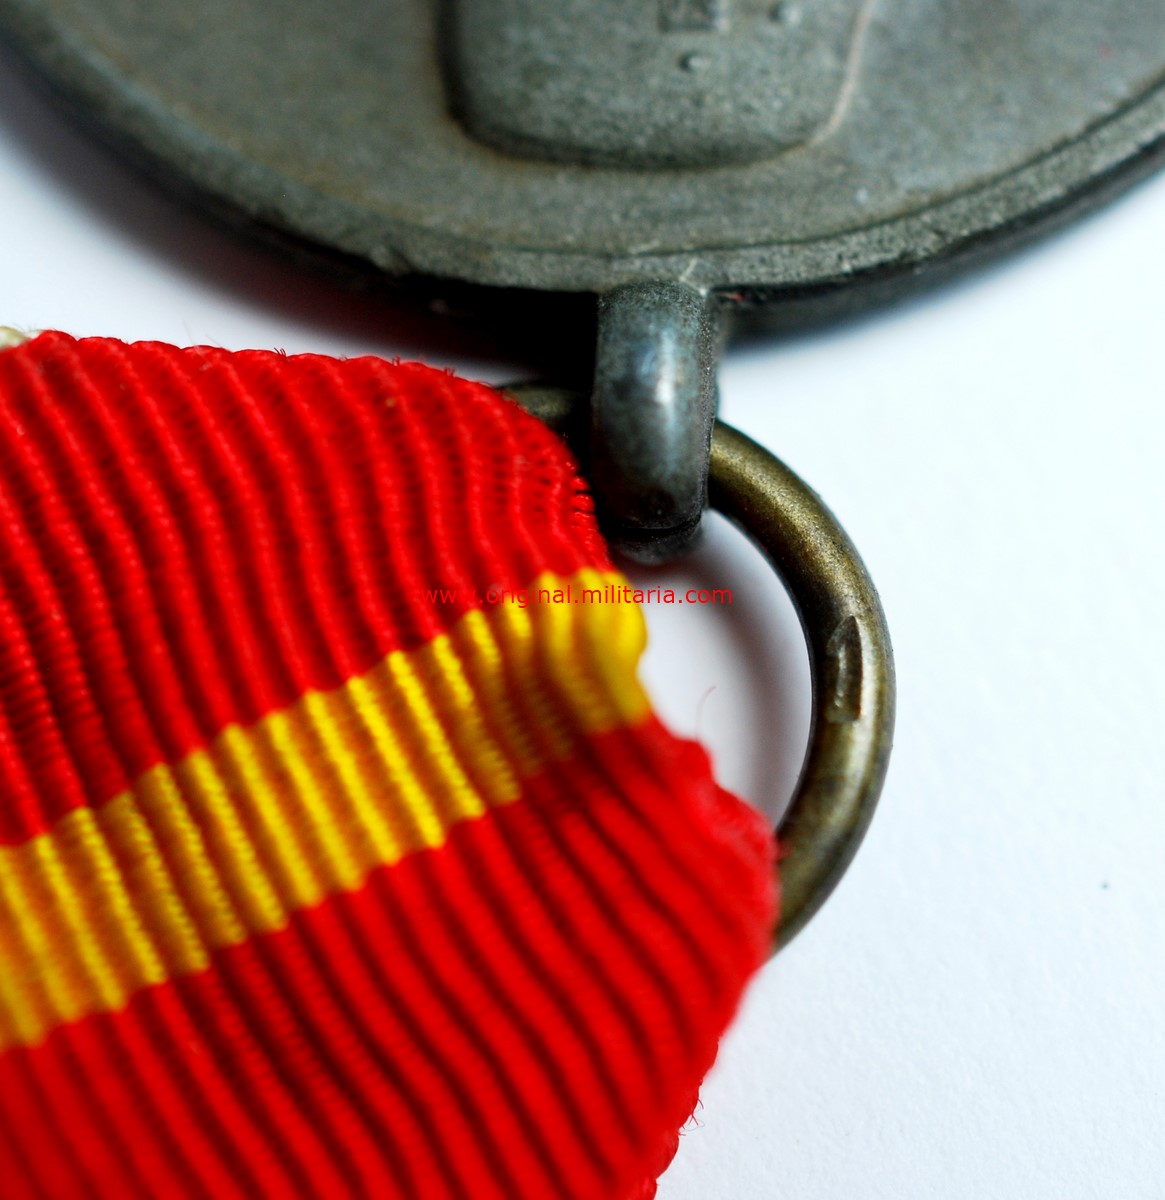 WH/DA, Medalla de los Voluntarios de la División Azul. Modelo alemán de 1944, Marcado "1"